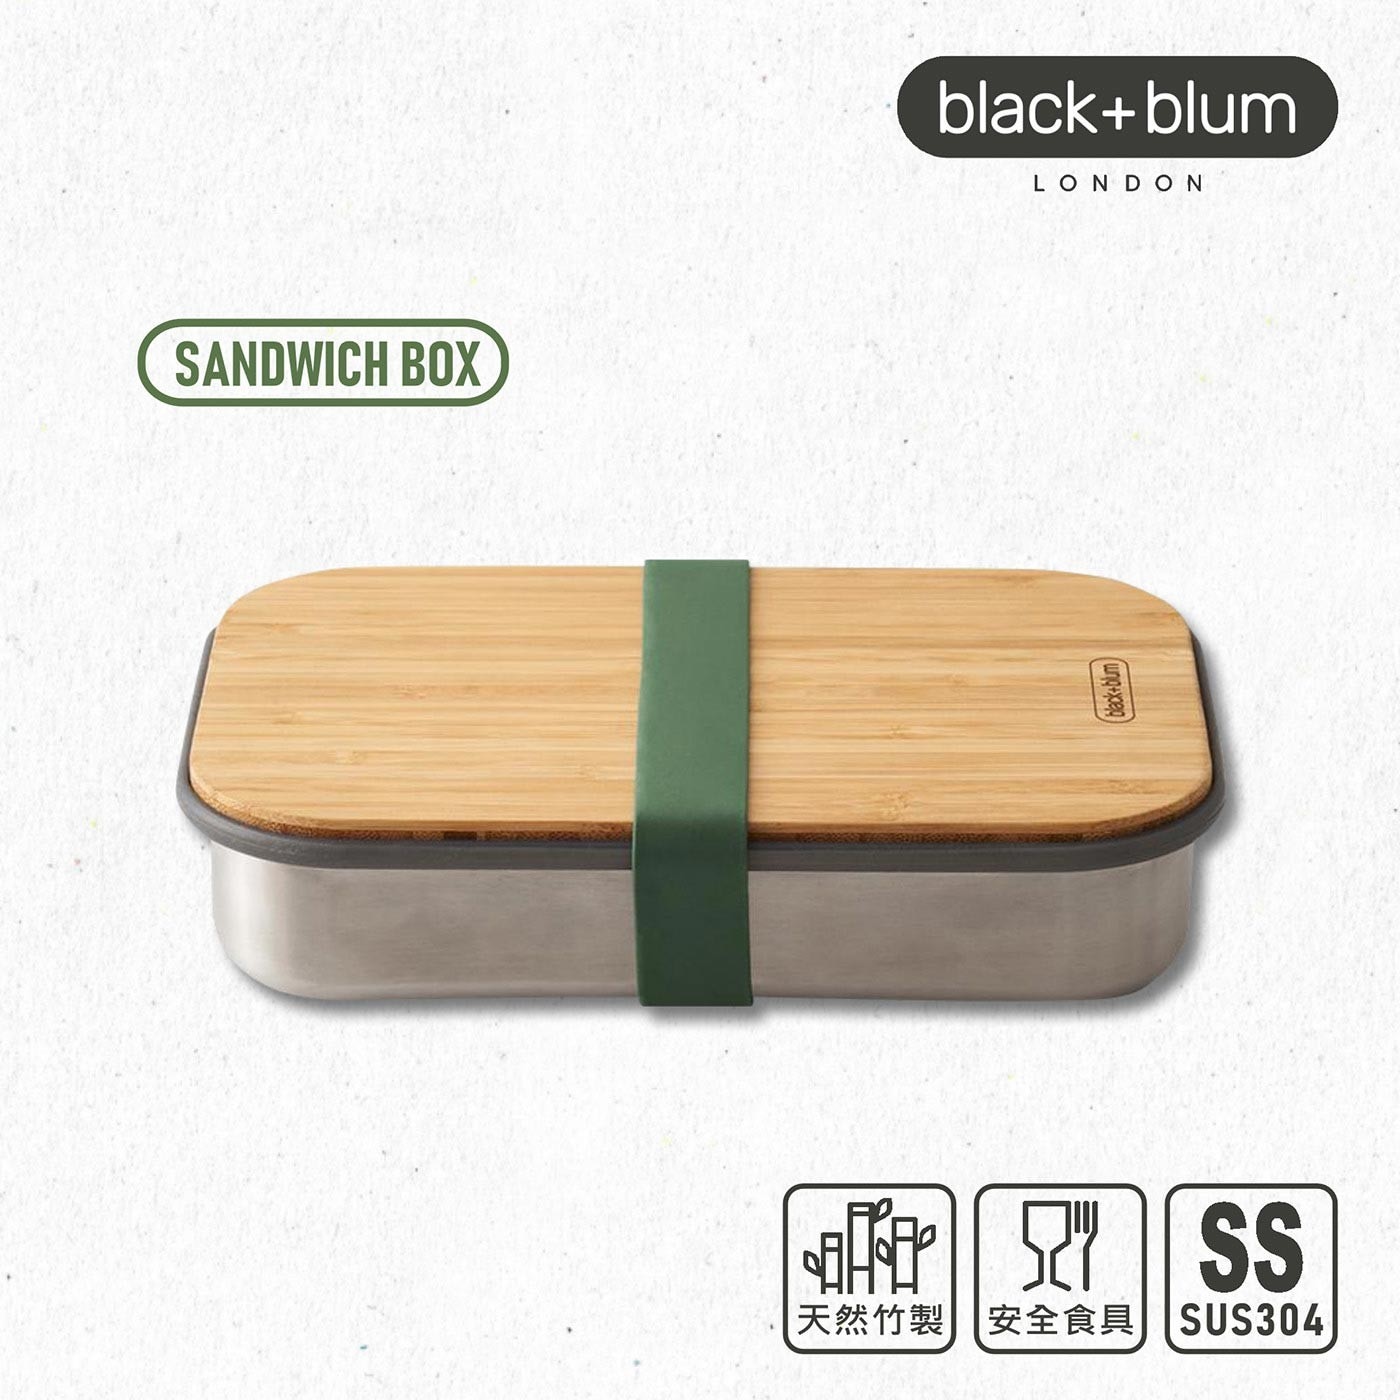 英國black+blum不鏽鋼輕食盒900毫升-橄欖綠，304不鏽鋼盒身、耐熱矽膠束帶邊條，高品質天然竹製上蓋，整體輕量化設計，針對土司三明治優化的盒身尺寸。